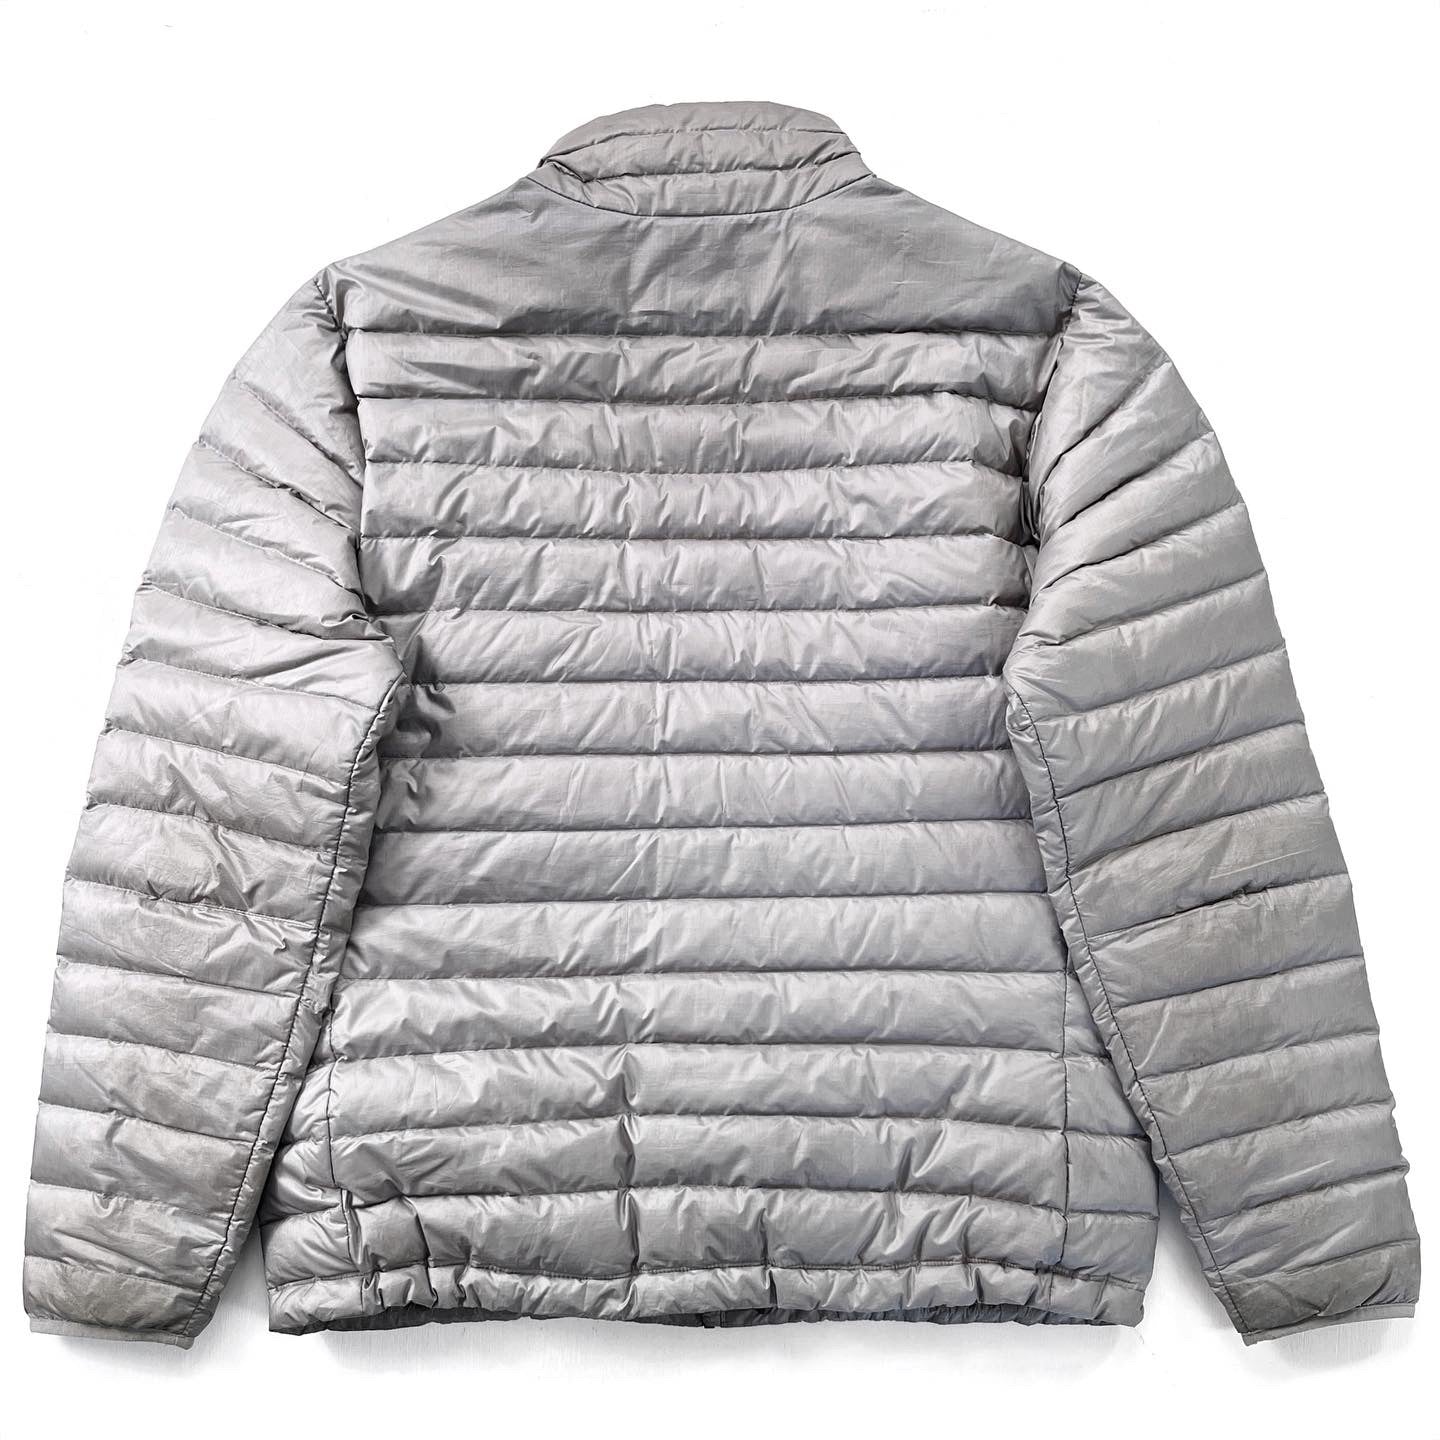 2015 Patagonia Mens Full-Zip Down Sweater, Light Grey (XL)